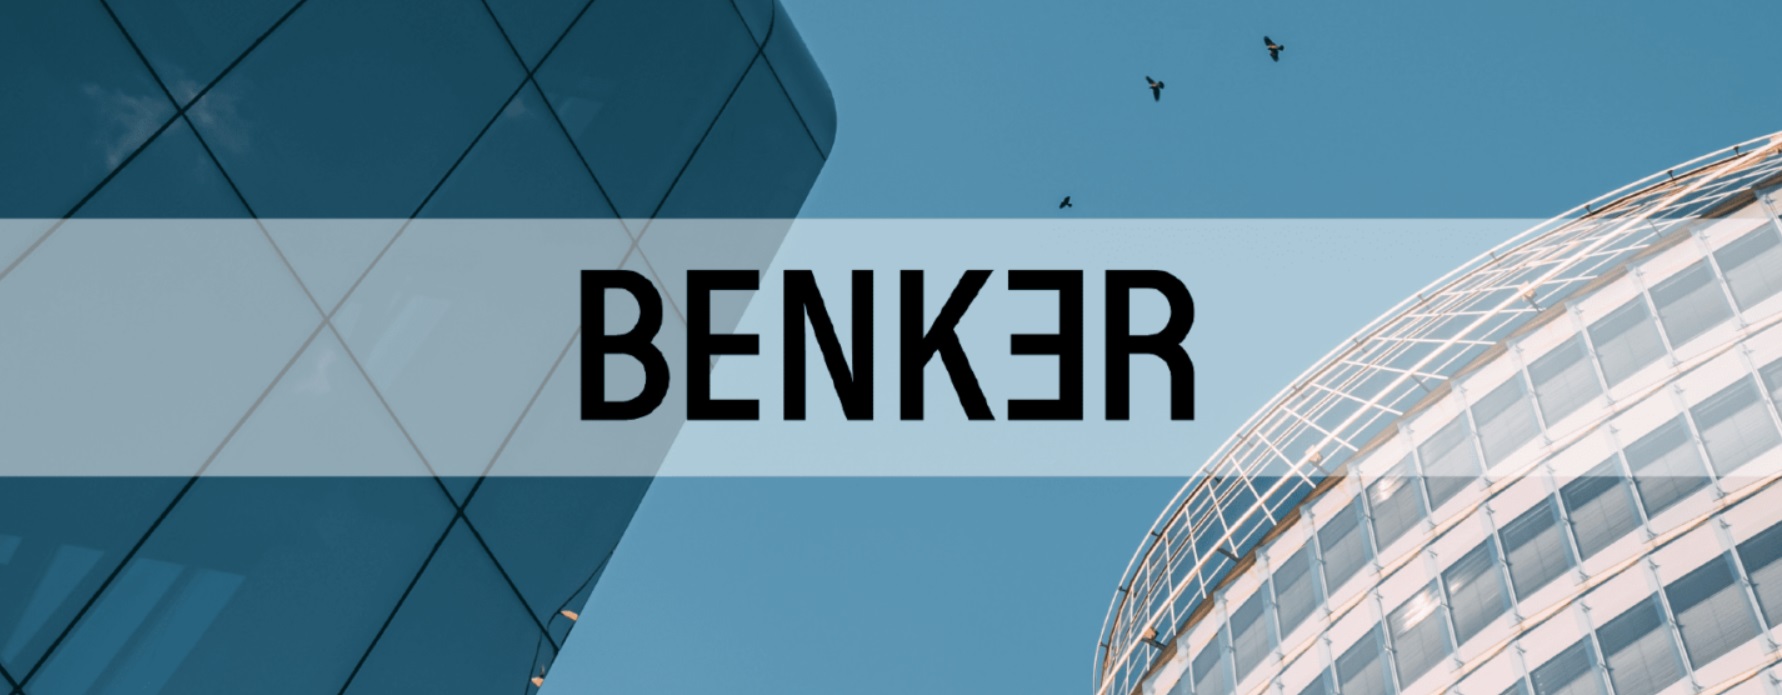 BENKER est désormais la première “néobanque” sous licence en Europe à fonctionner entièrement sur blockchain